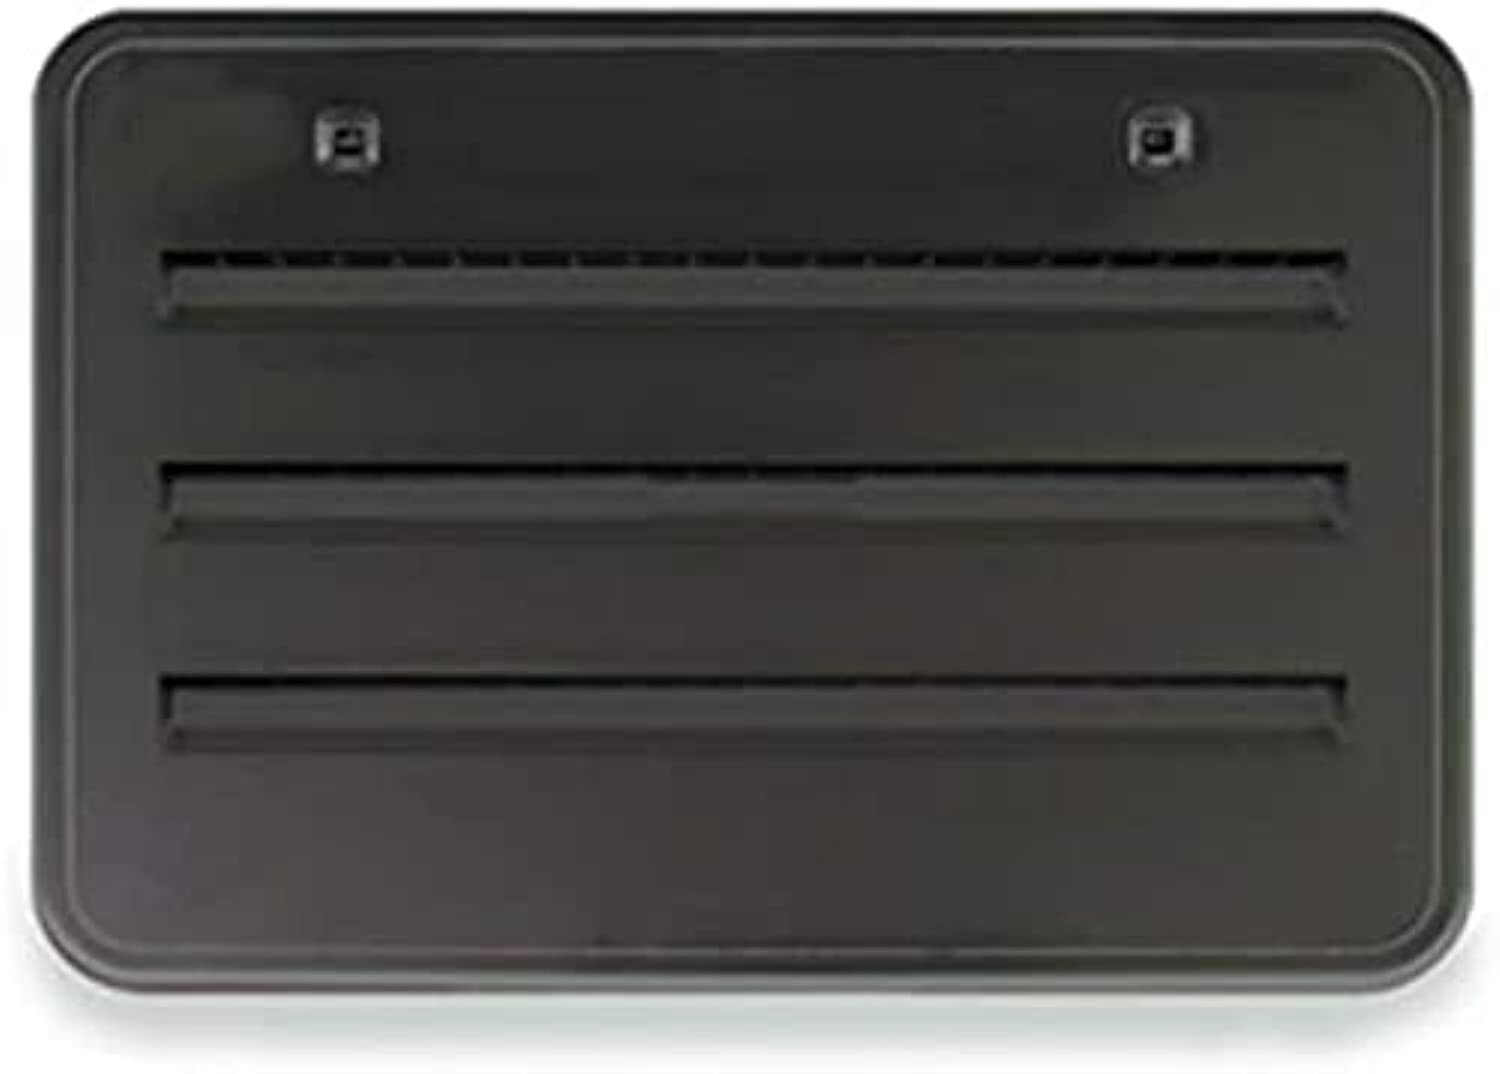 Norcold 621156bk Black Refrigerator Side Vent - image 2 of 3